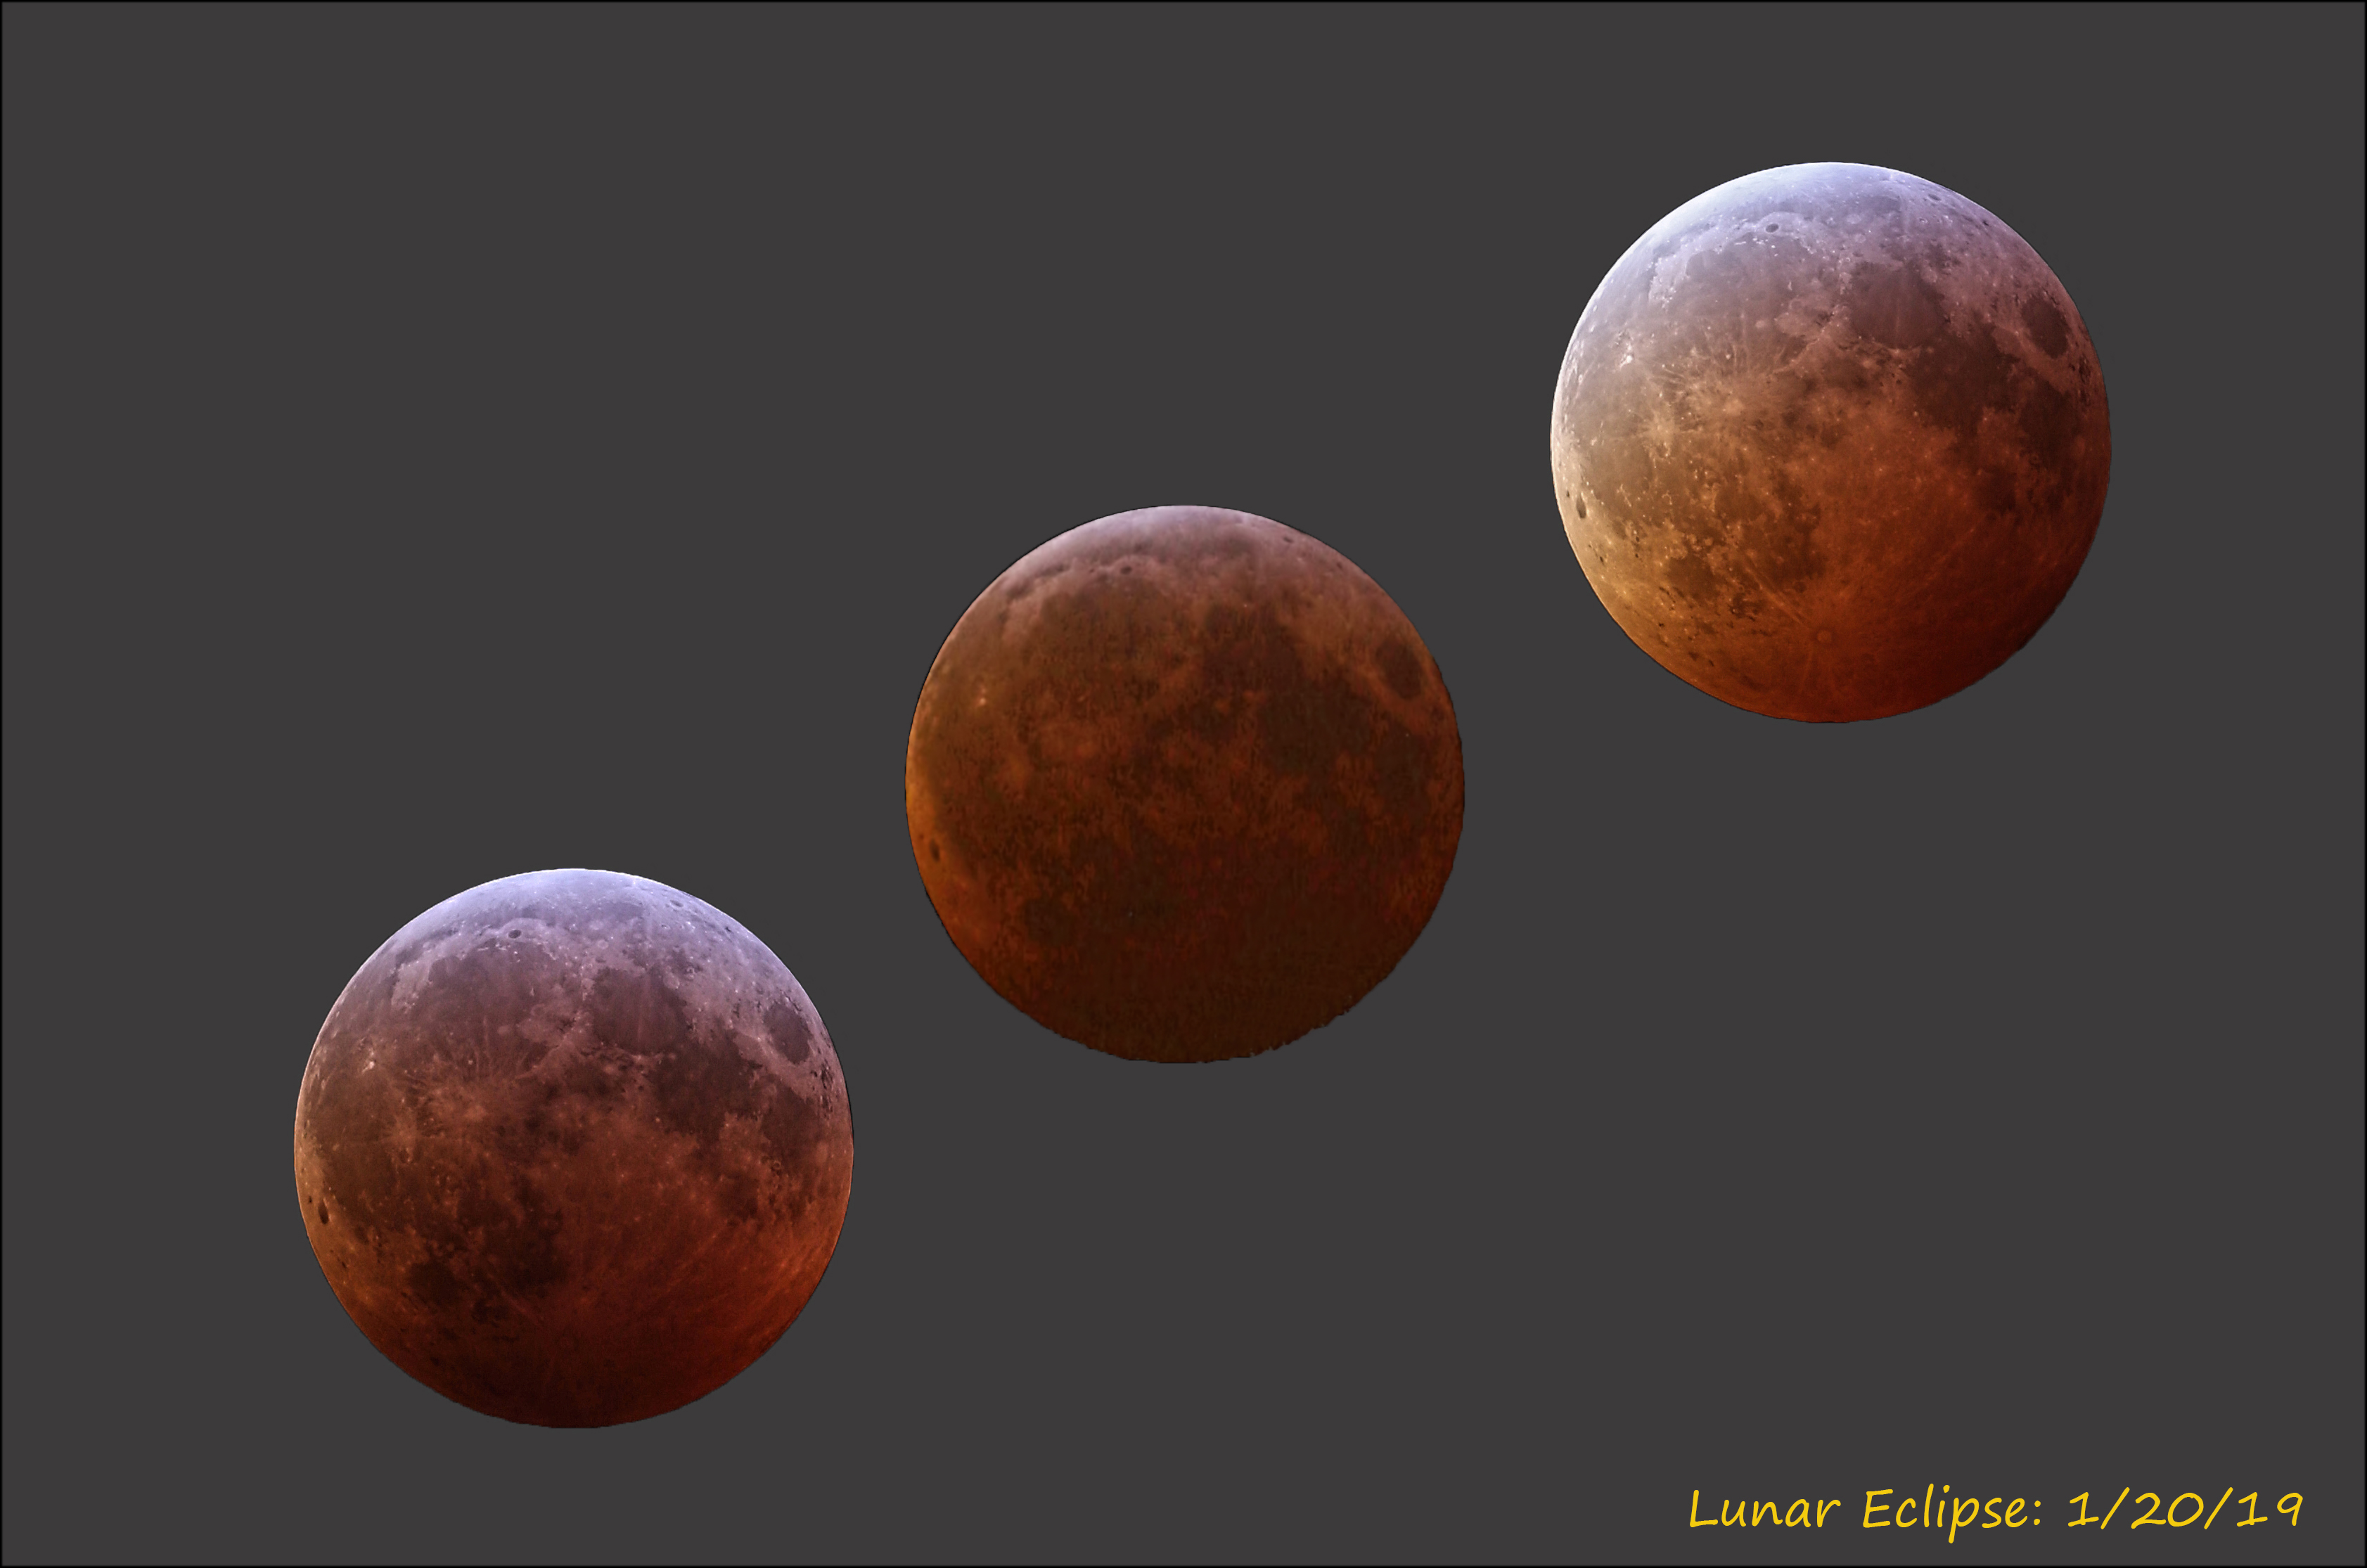 Lunar Eclipse: 10/8/15